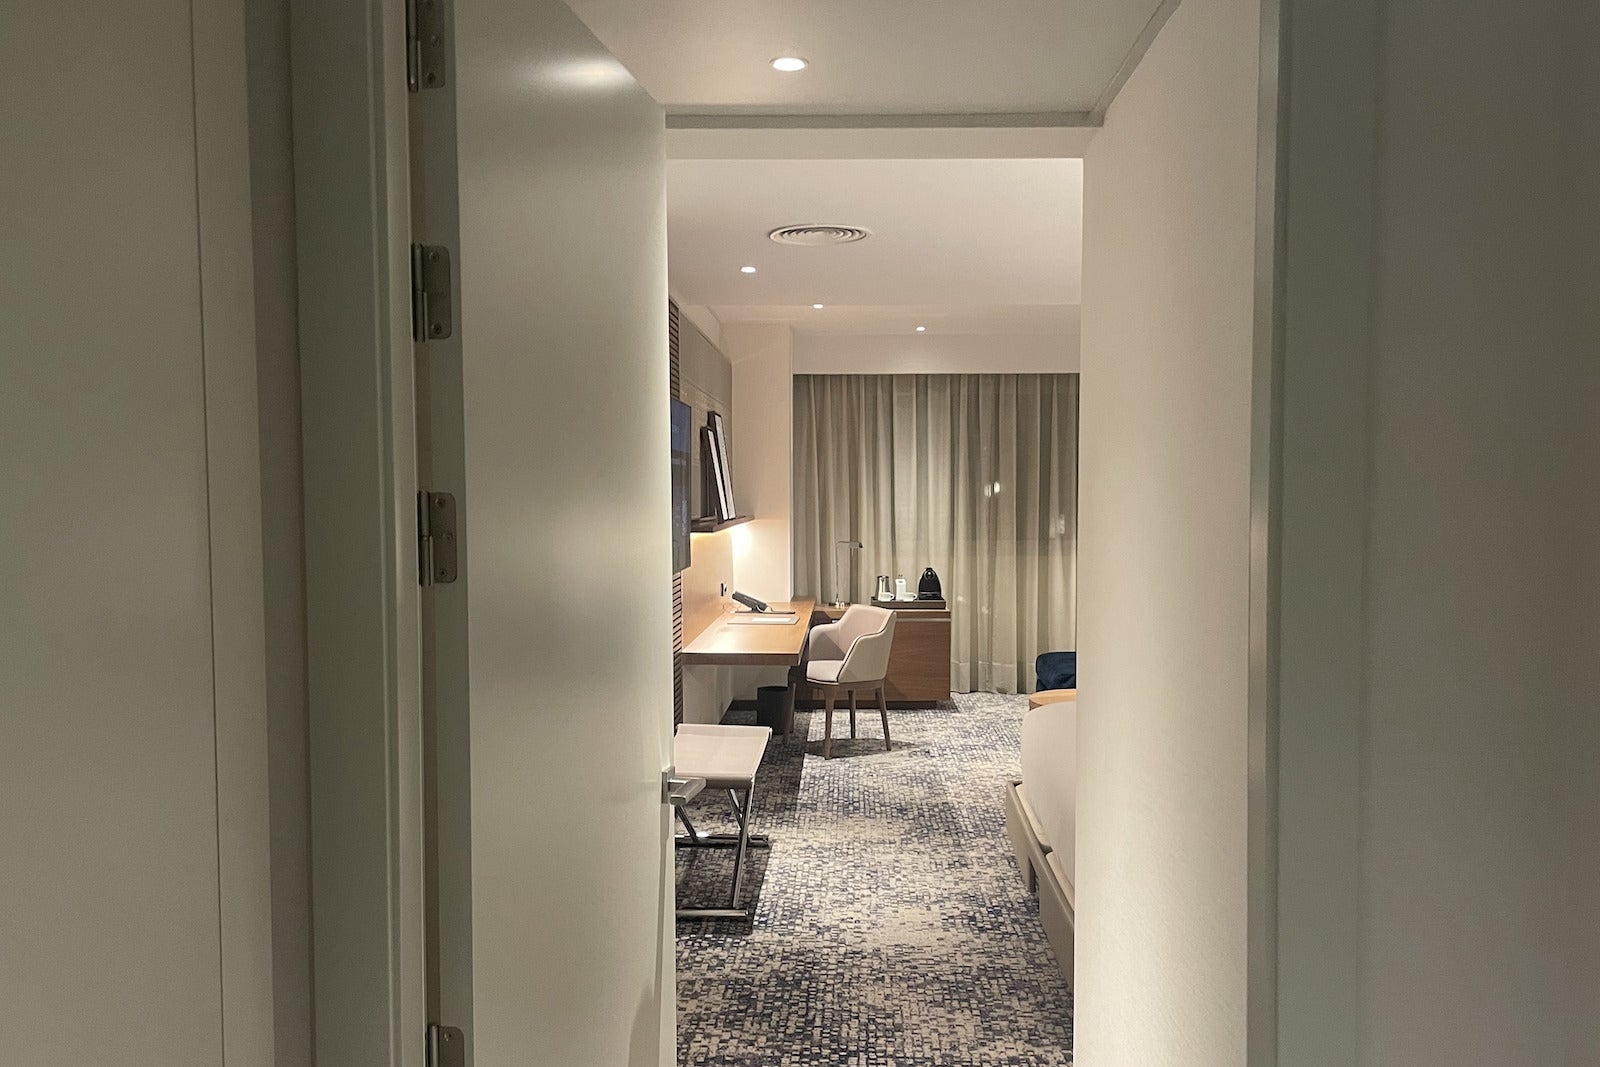 hallway looking into hotel room